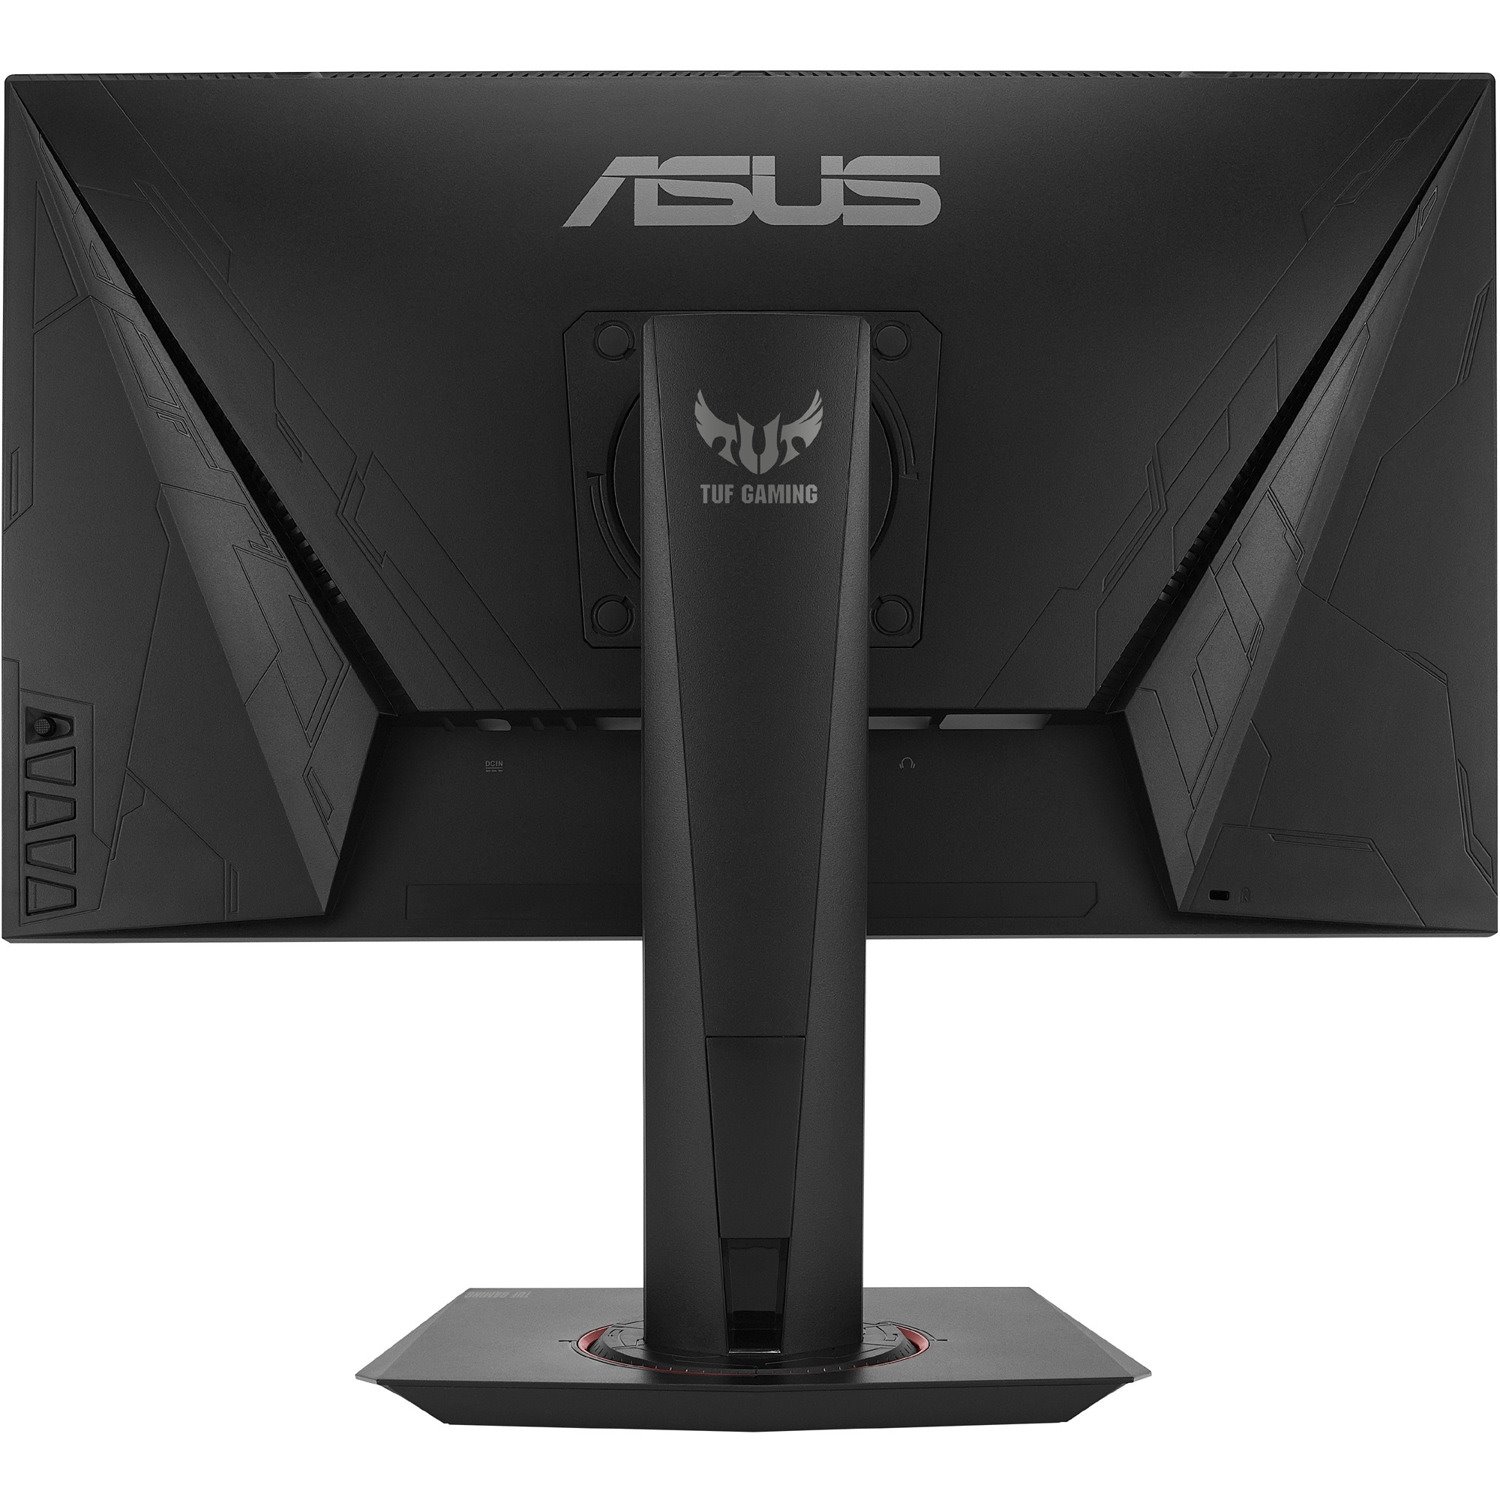 Asus VG258QM 25" Class Full HD Gaming LCD Monitor - 16:9 - Black